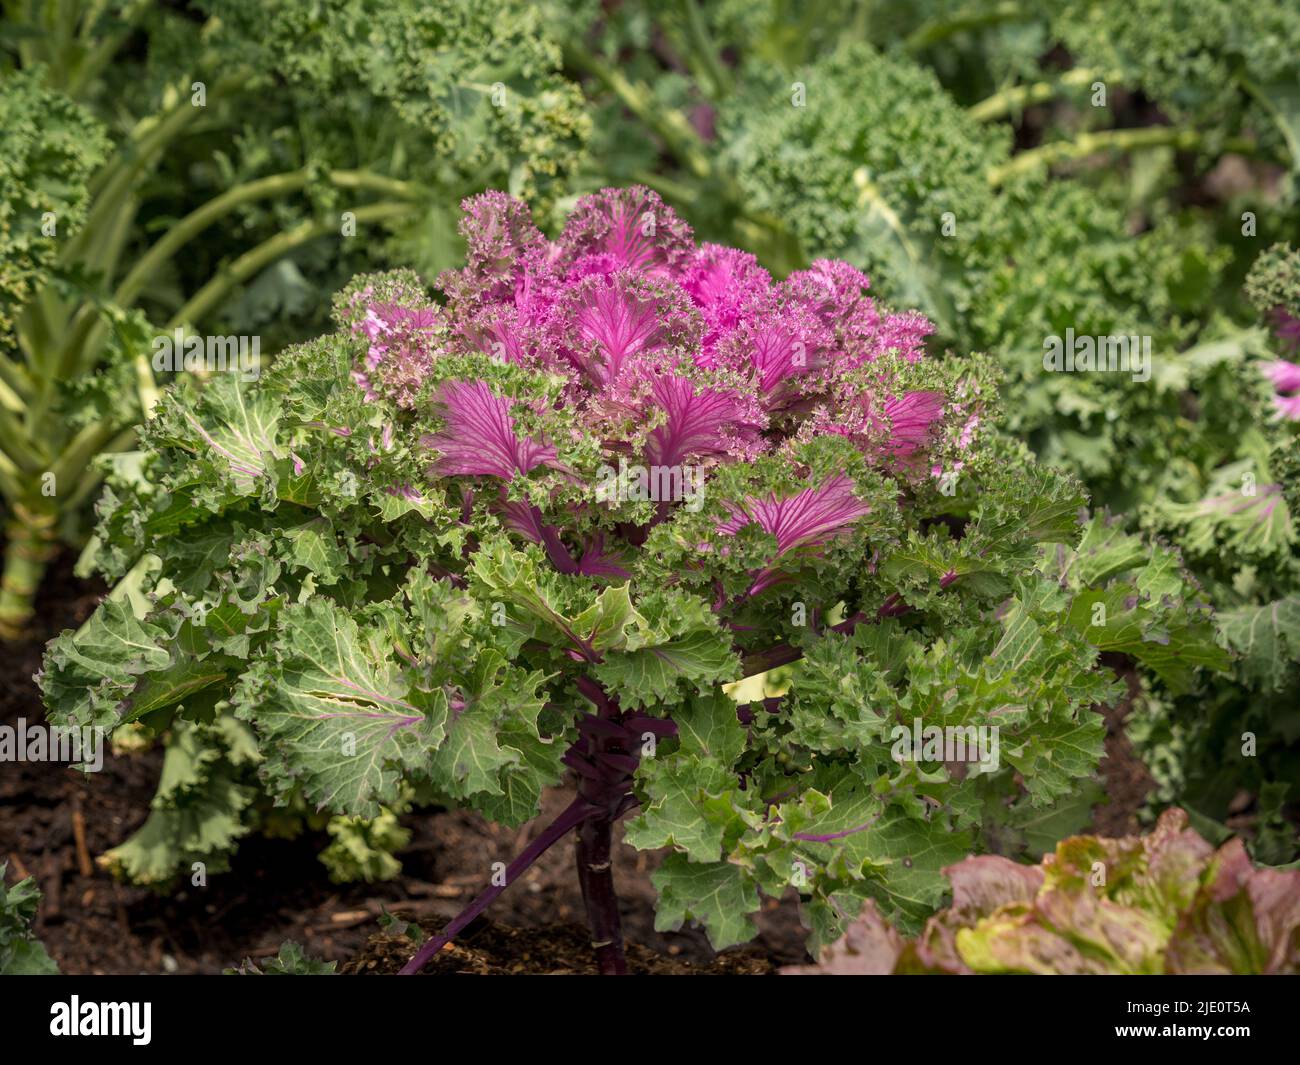 Rosafarbener und grüner essbarer Zierkohl, genannt Kale Rainbow Candy Crush, wächst in einem britischen Garten. Stockfoto